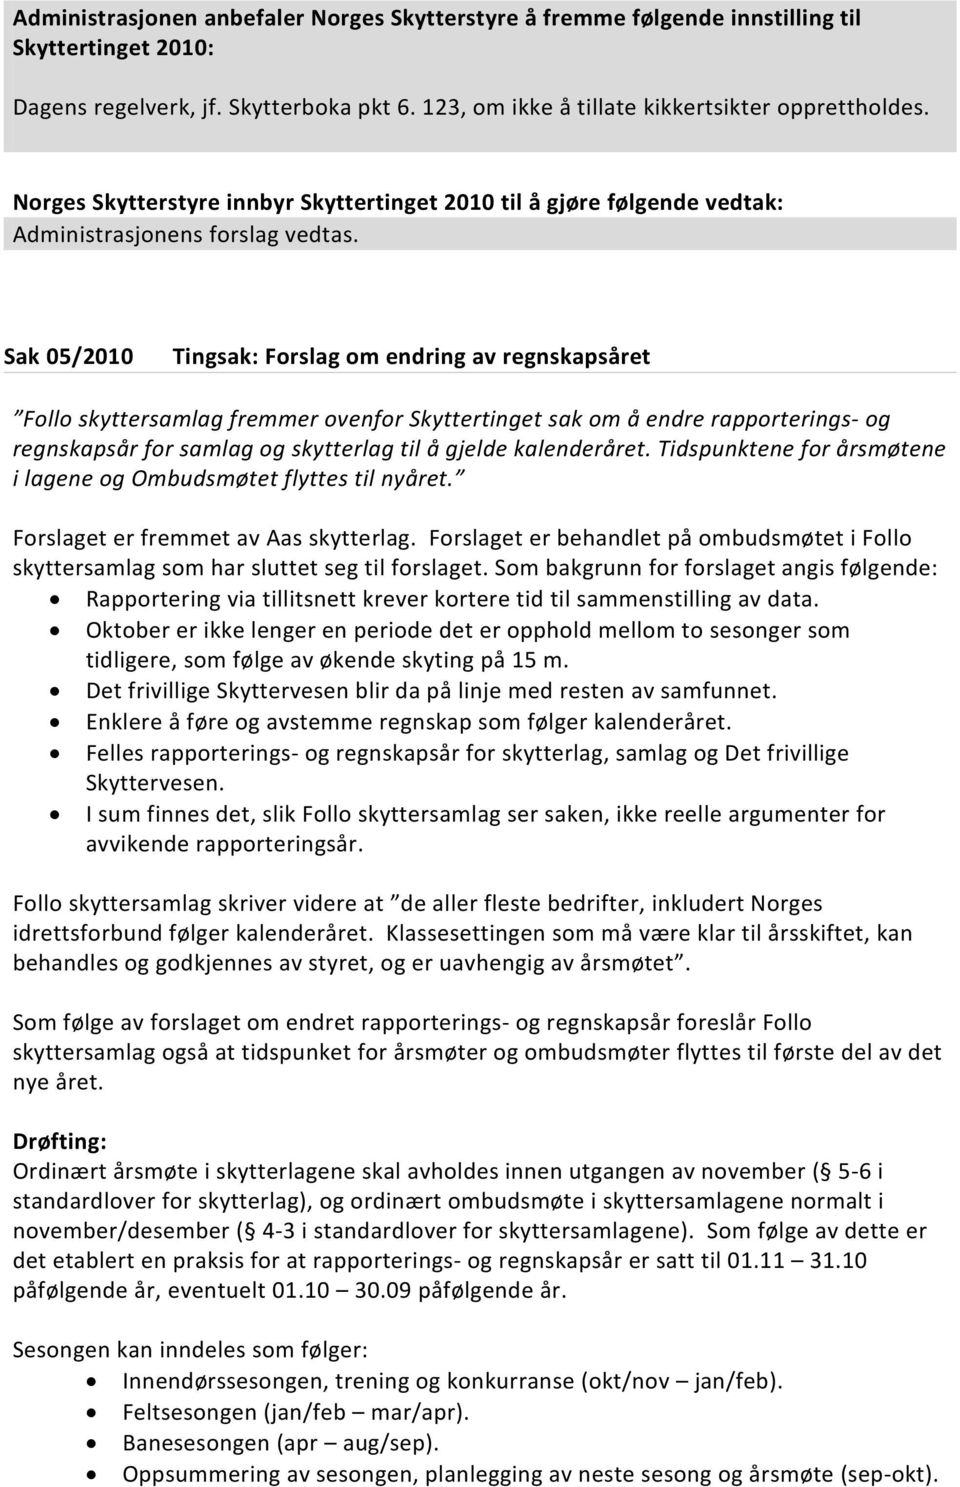 Sak 05/2010 Tingsak: Forslag om endring av regnskapsåret Follo skyttersamlag fremmer ovenfor Skyttertinget sak om å endre rapporterings- og regnskapsår for samlag og skytterlag til å gjelde